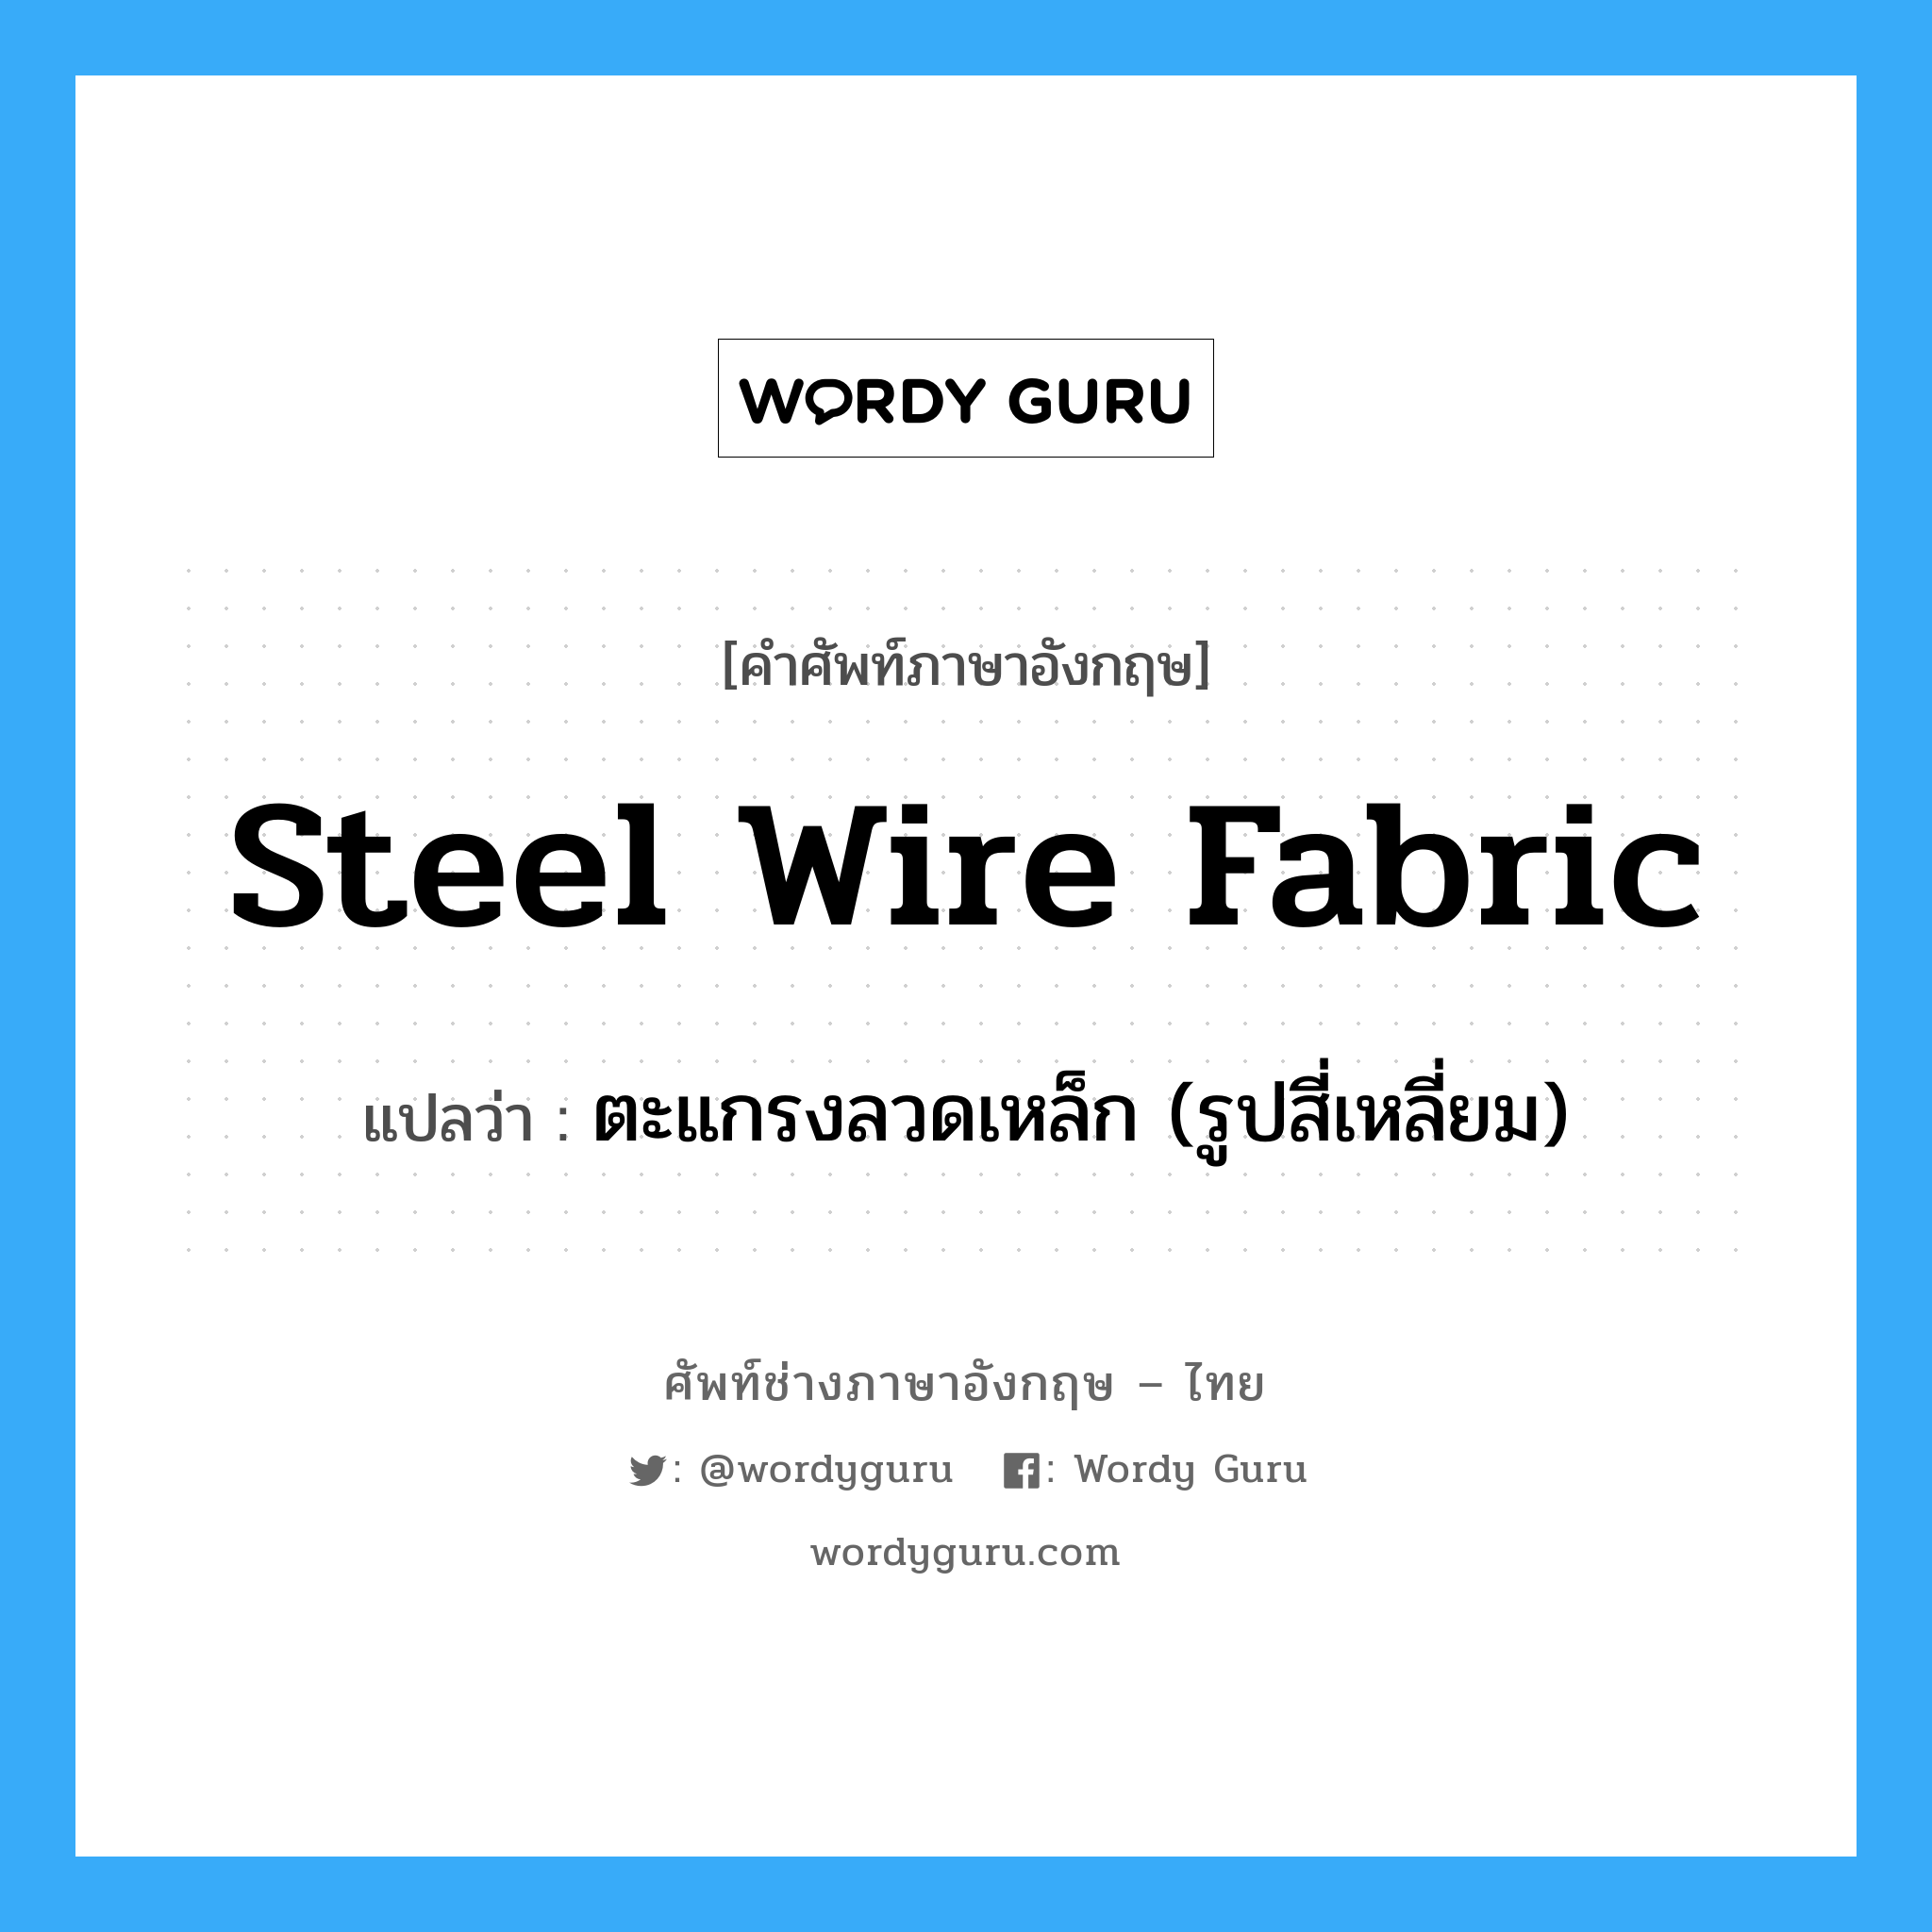 ตะแกรงลวดเหล็ก (รูปสี่เหลี่ยม) ภาษาอังกฤษ?, คำศัพท์ช่างภาษาอังกฤษ - ไทย ตะแกรงลวดเหล็ก (รูปสี่เหลี่ยม) คำศัพท์ภาษาอังกฤษ ตะแกรงลวดเหล็ก (รูปสี่เหลี่ยม) แปลว่า steel wire fabric